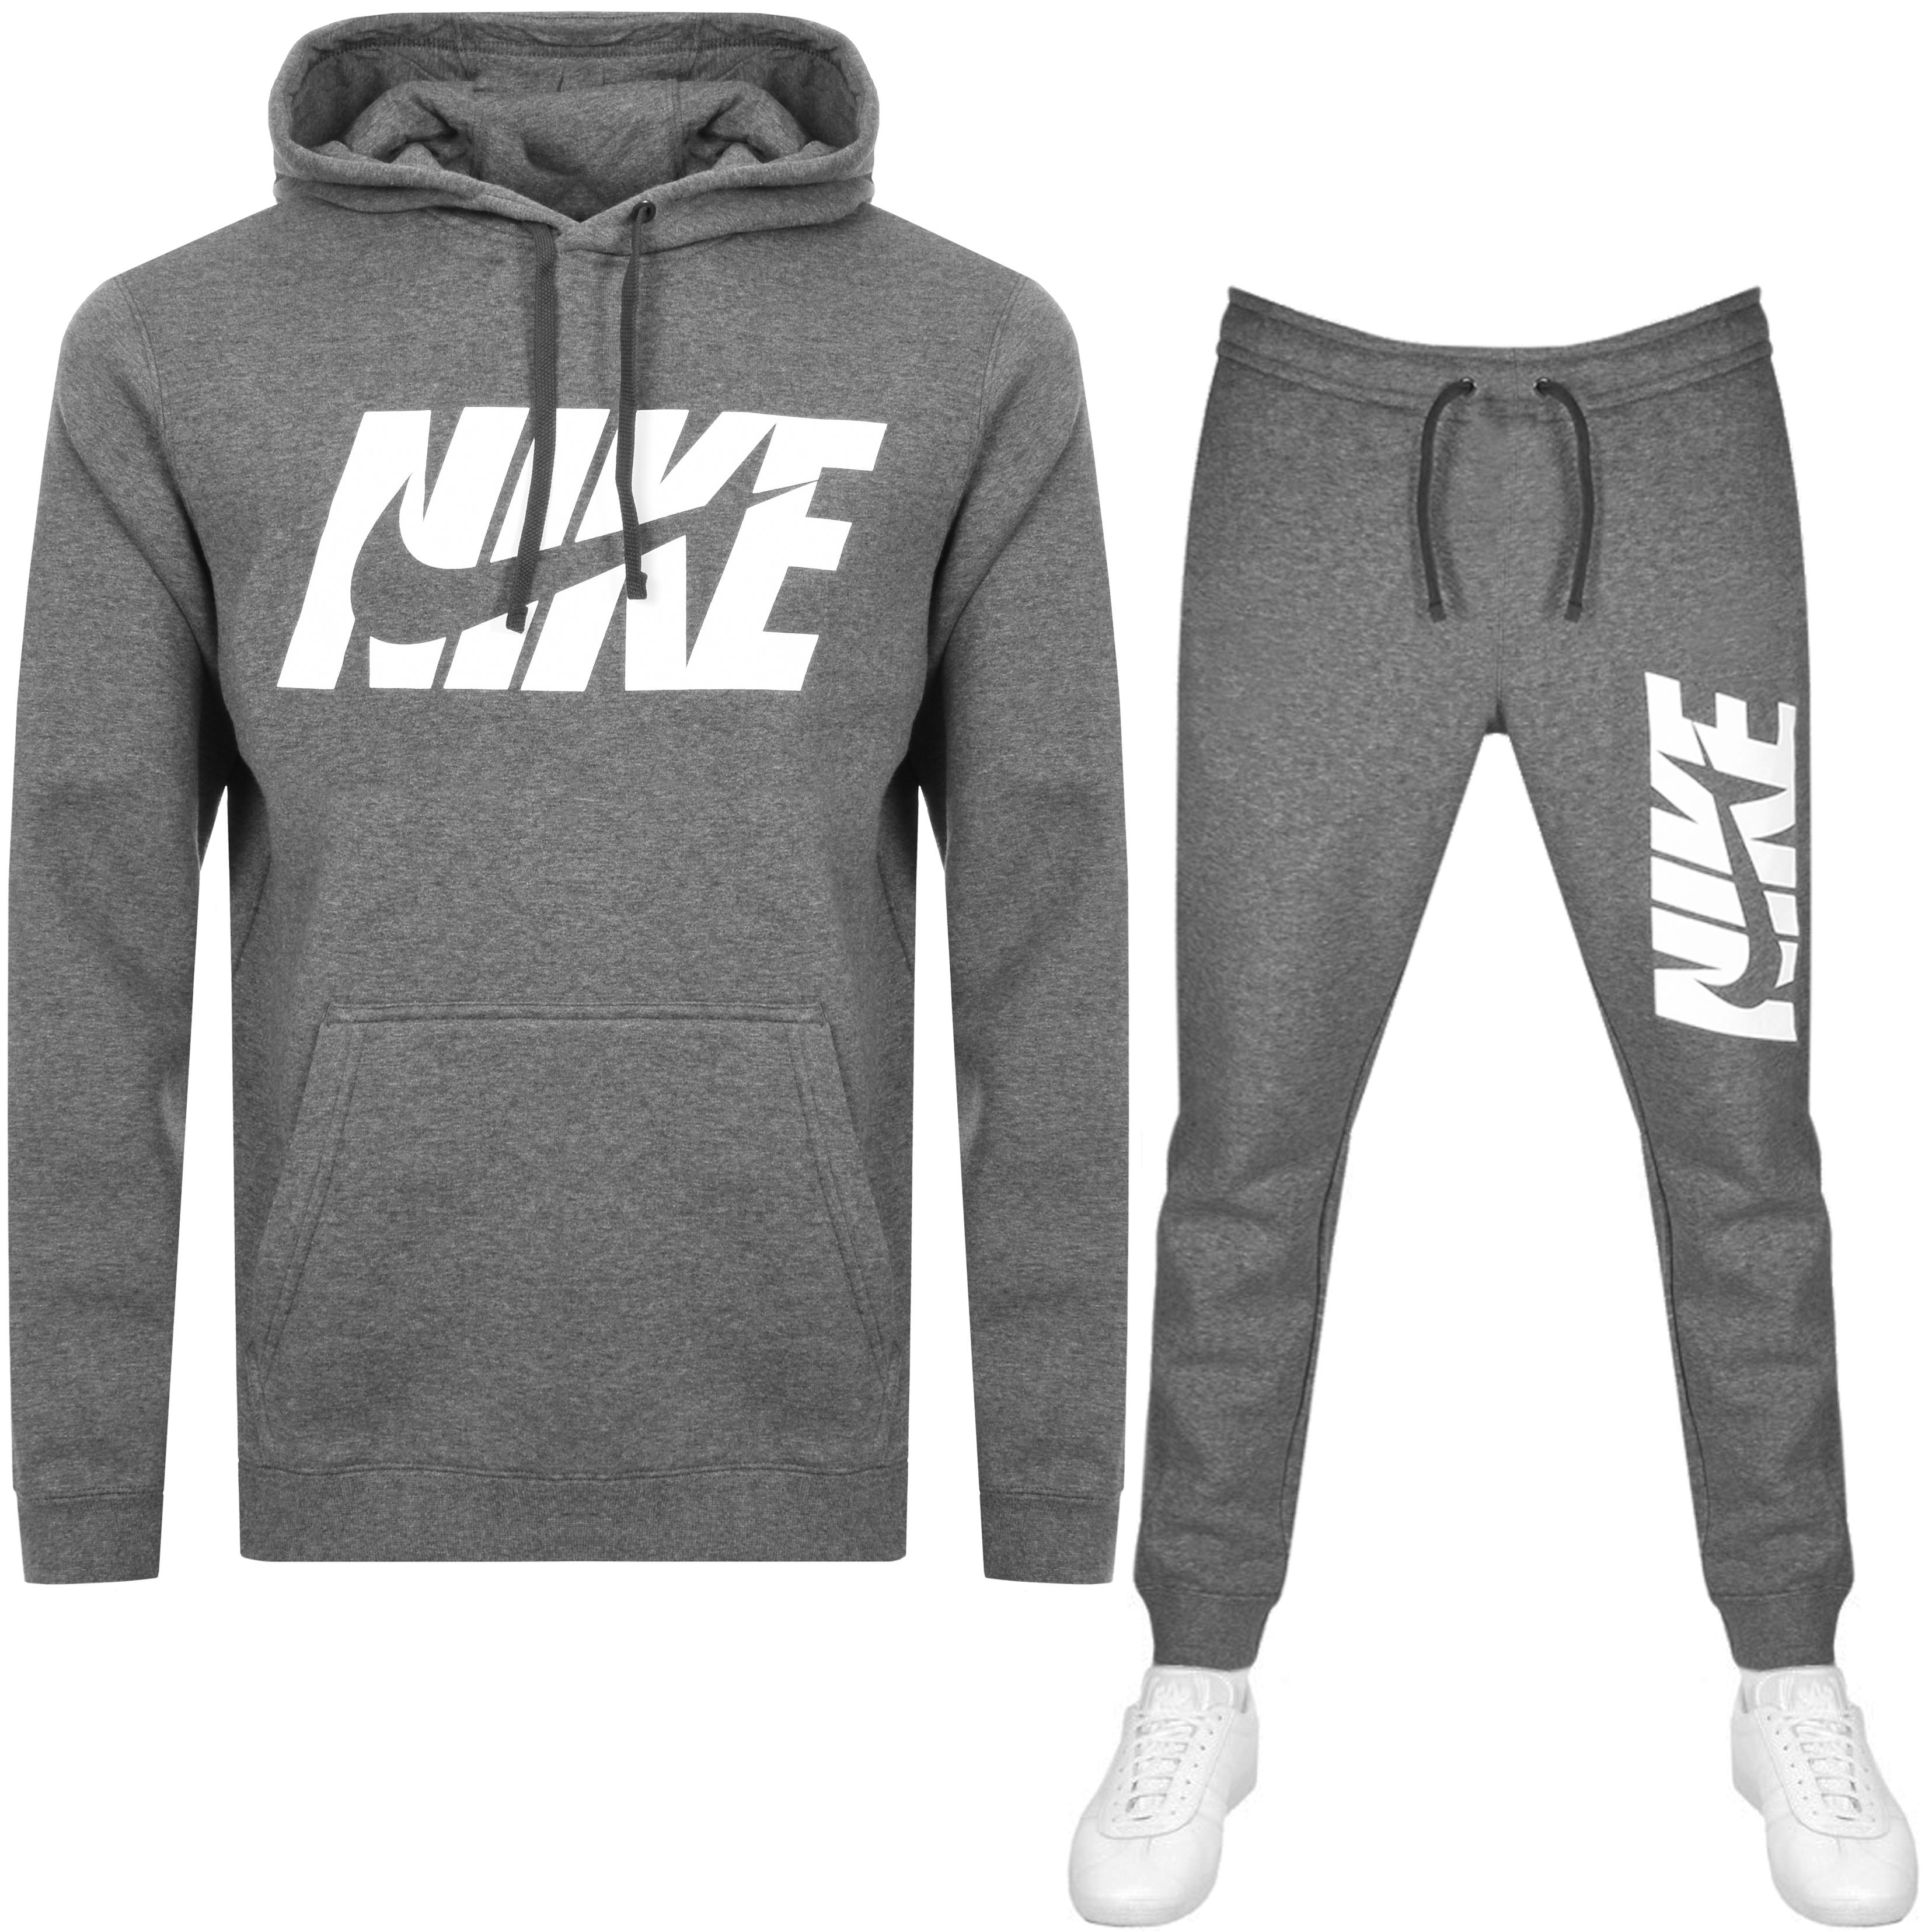 Nike Fleece Gx Tracksuit Grey in Grey for Men - Lyst